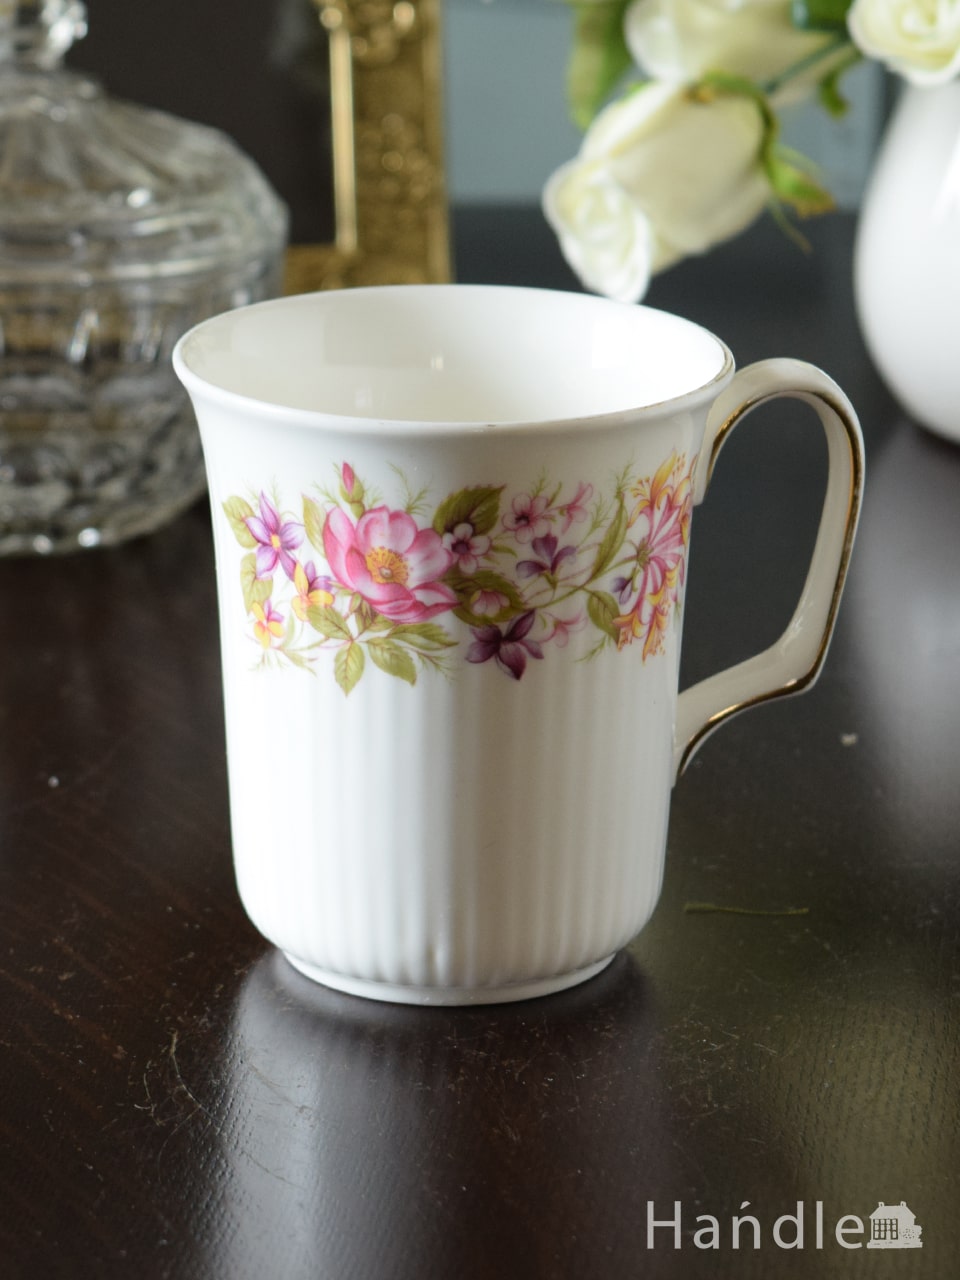 コルクラフ(Colclough)のマグカップ、お花模様が華やかなアンティークの食器 (m-5653-z)